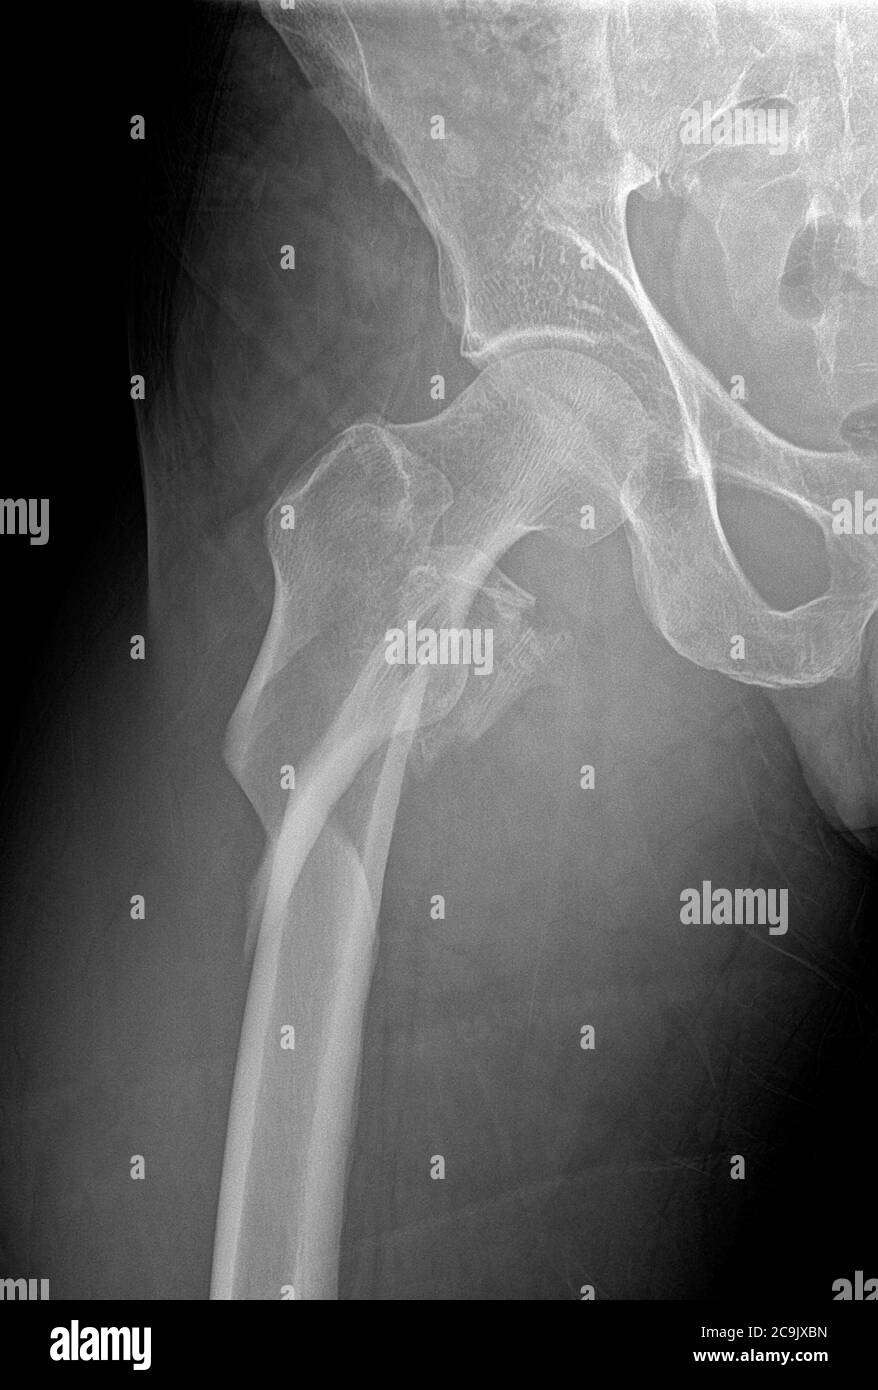 Fracture de la hanche. Radiographie frontale de la hanche droite d ...